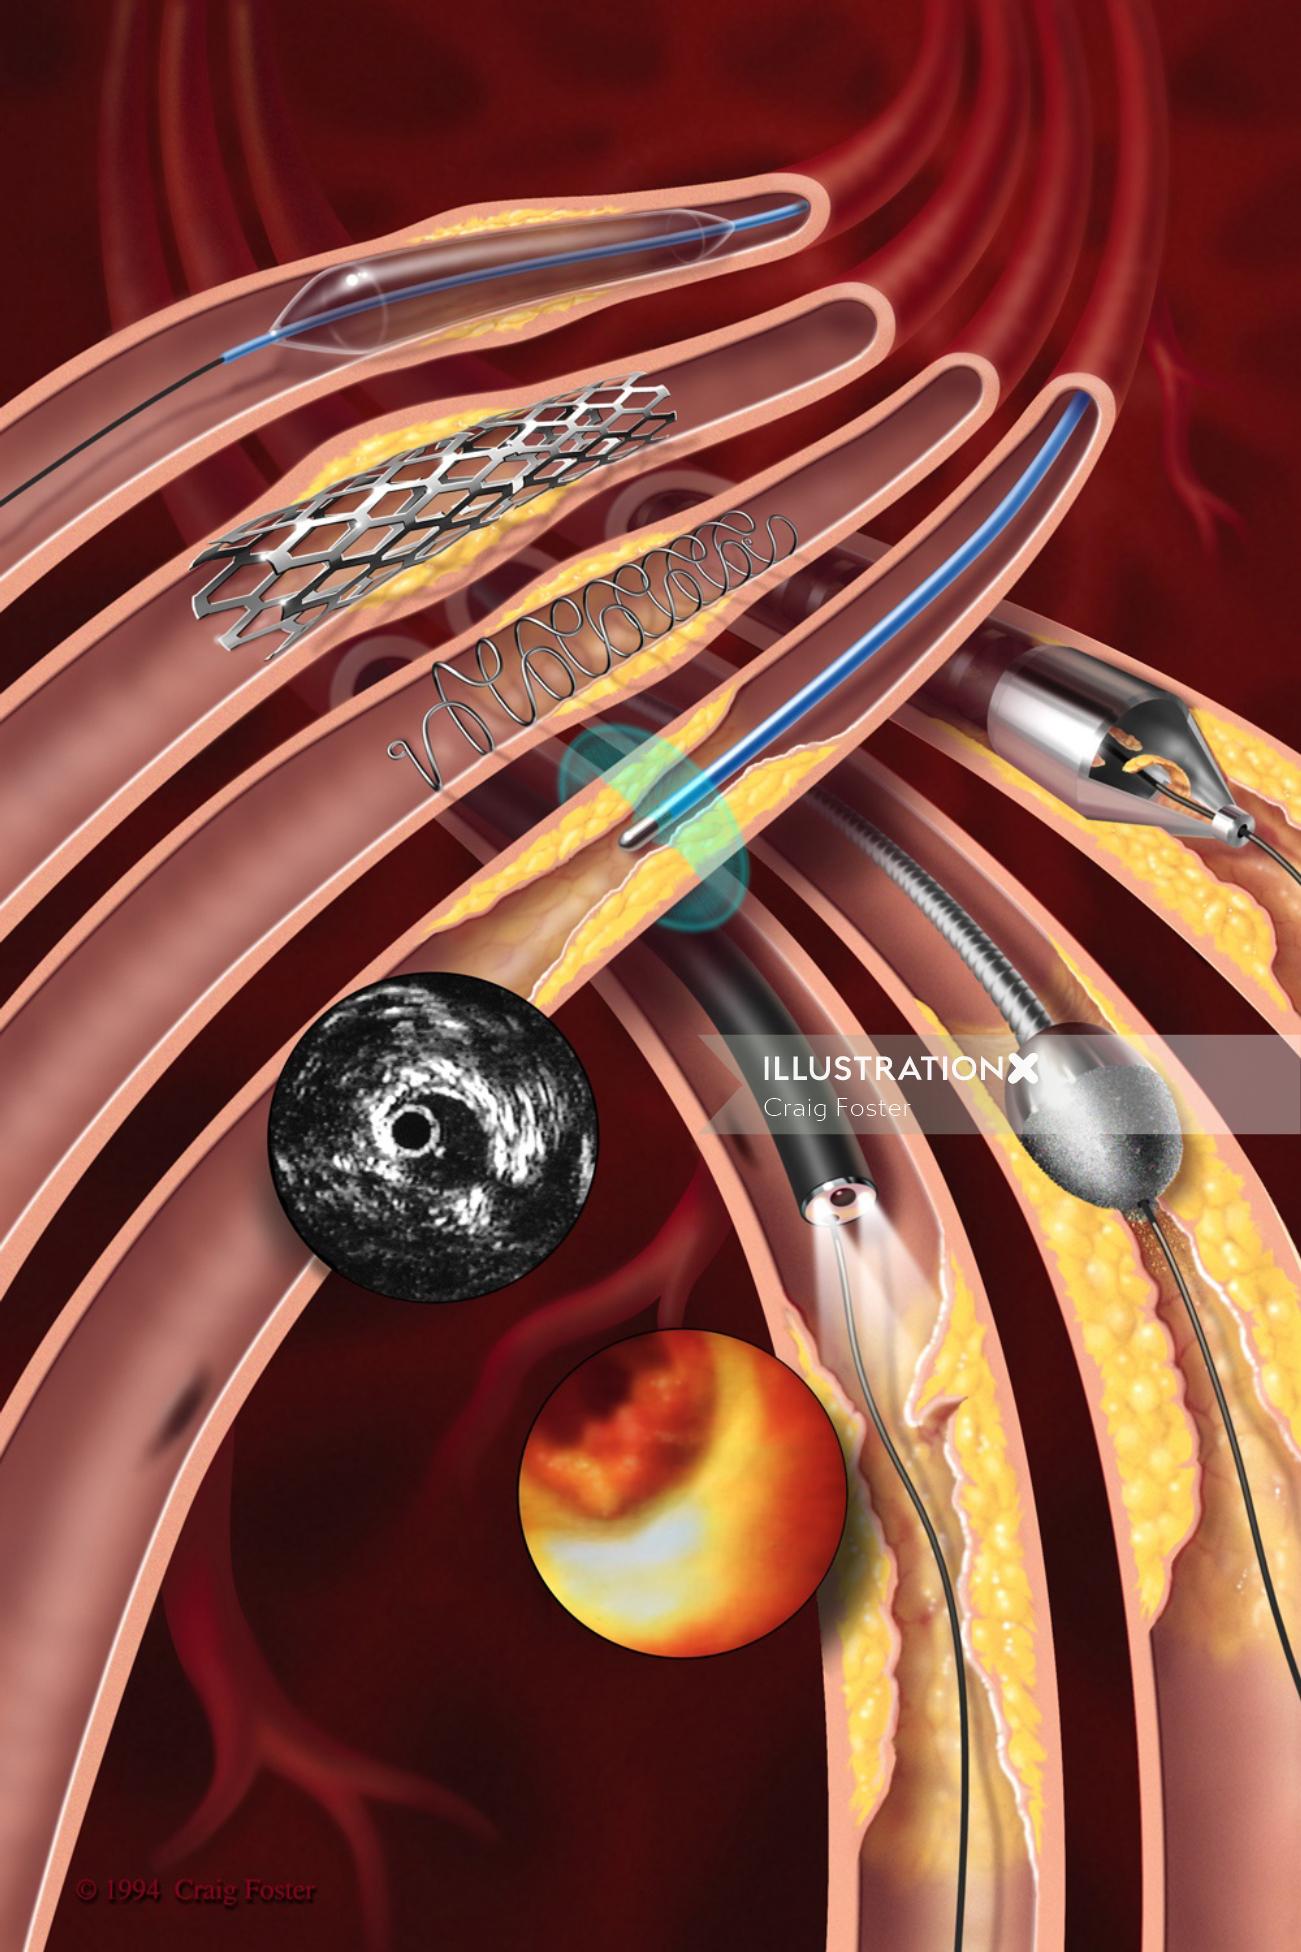 Uma ilustração da ilustração endovascular